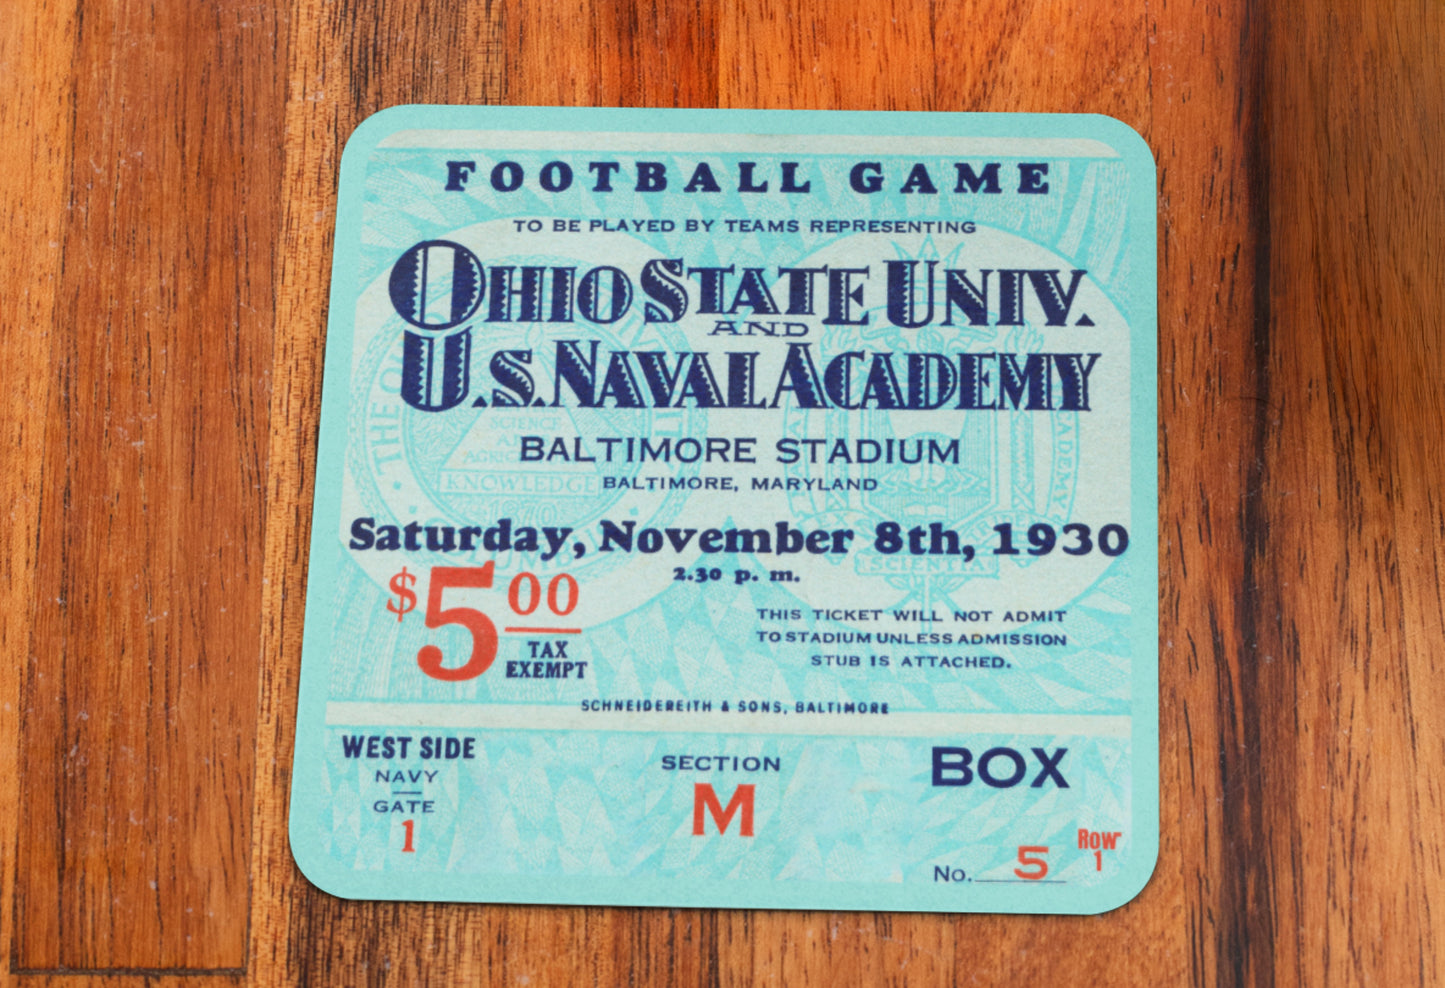 1930 Ohio State vs. Navy Football Ticket Coasters